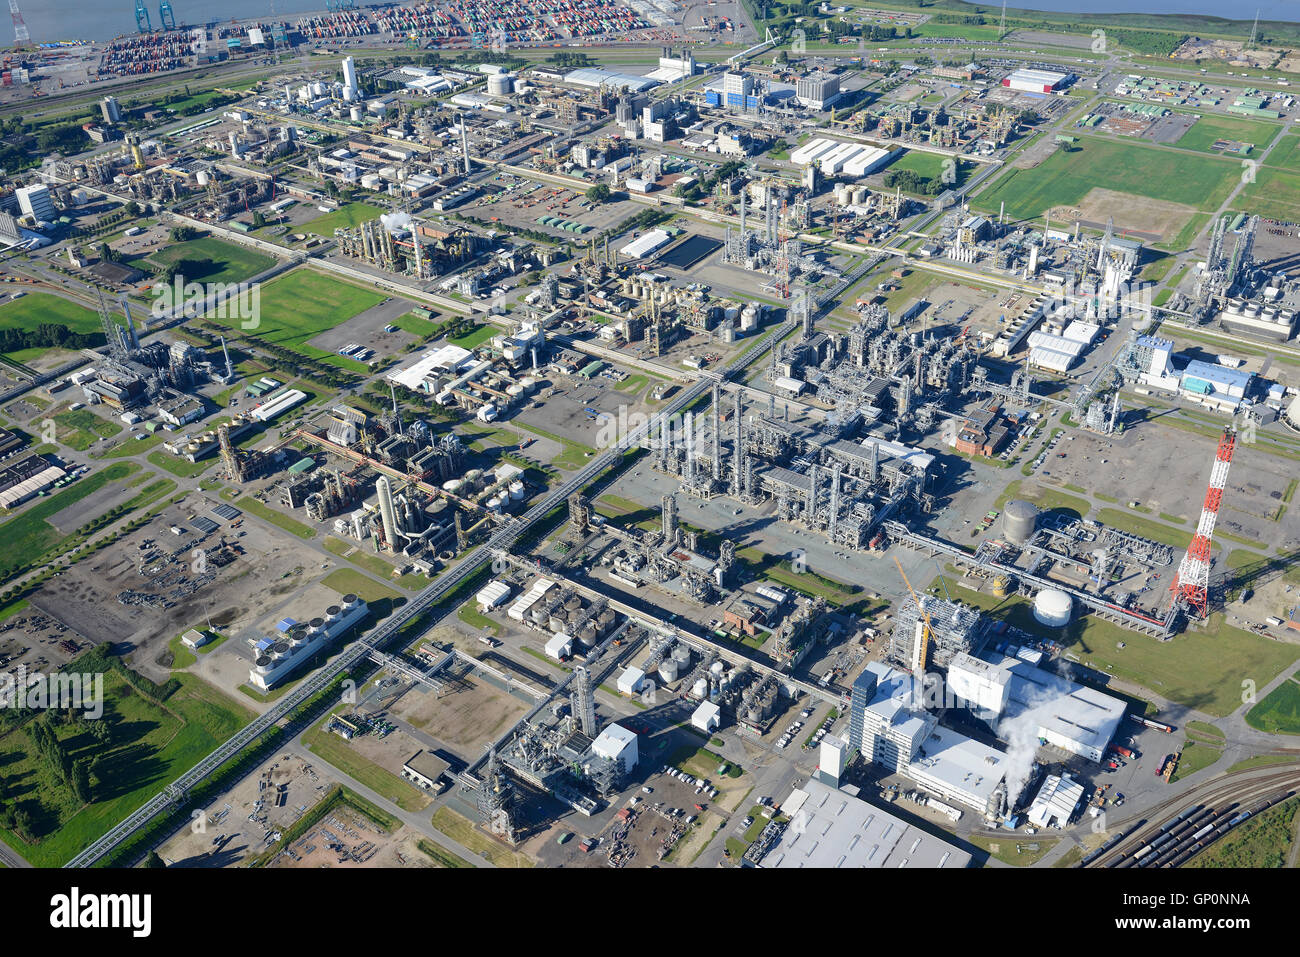 VUE AÉRIENNE.Site de production chimique de BASF Antwerpen.Port d'Anvers, région flamande, Belgique. Banque D'Images